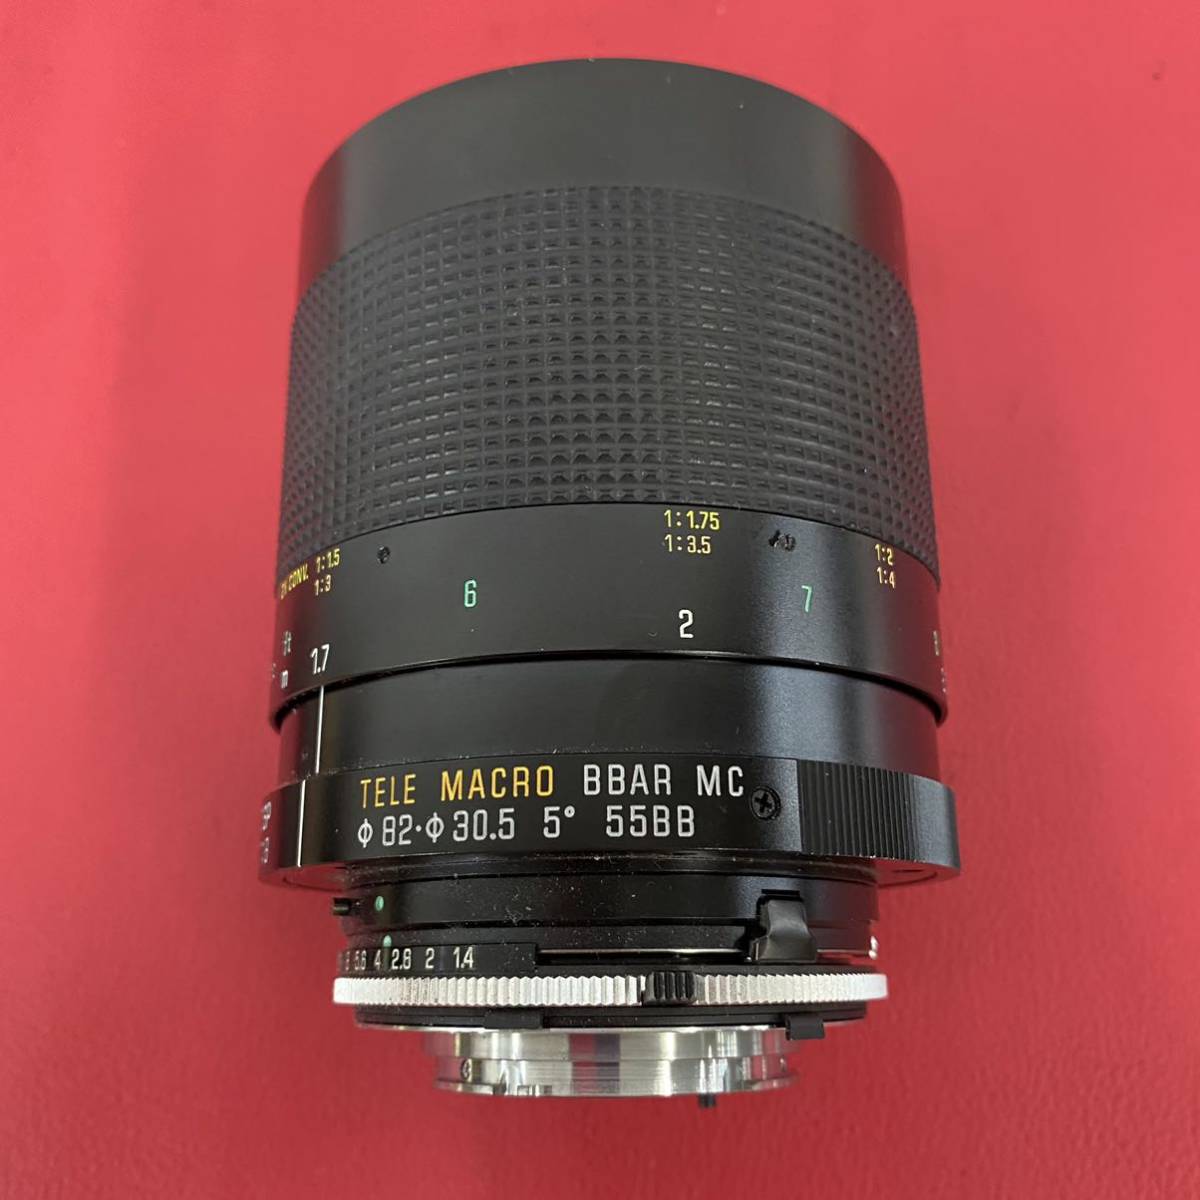 ◆A TAMRON SP 500mm 1:8 TELE MACRO BBAR MC φ82-30.5 5° 55BB ミラーレンズ カメラレンズ タムロン_画像3